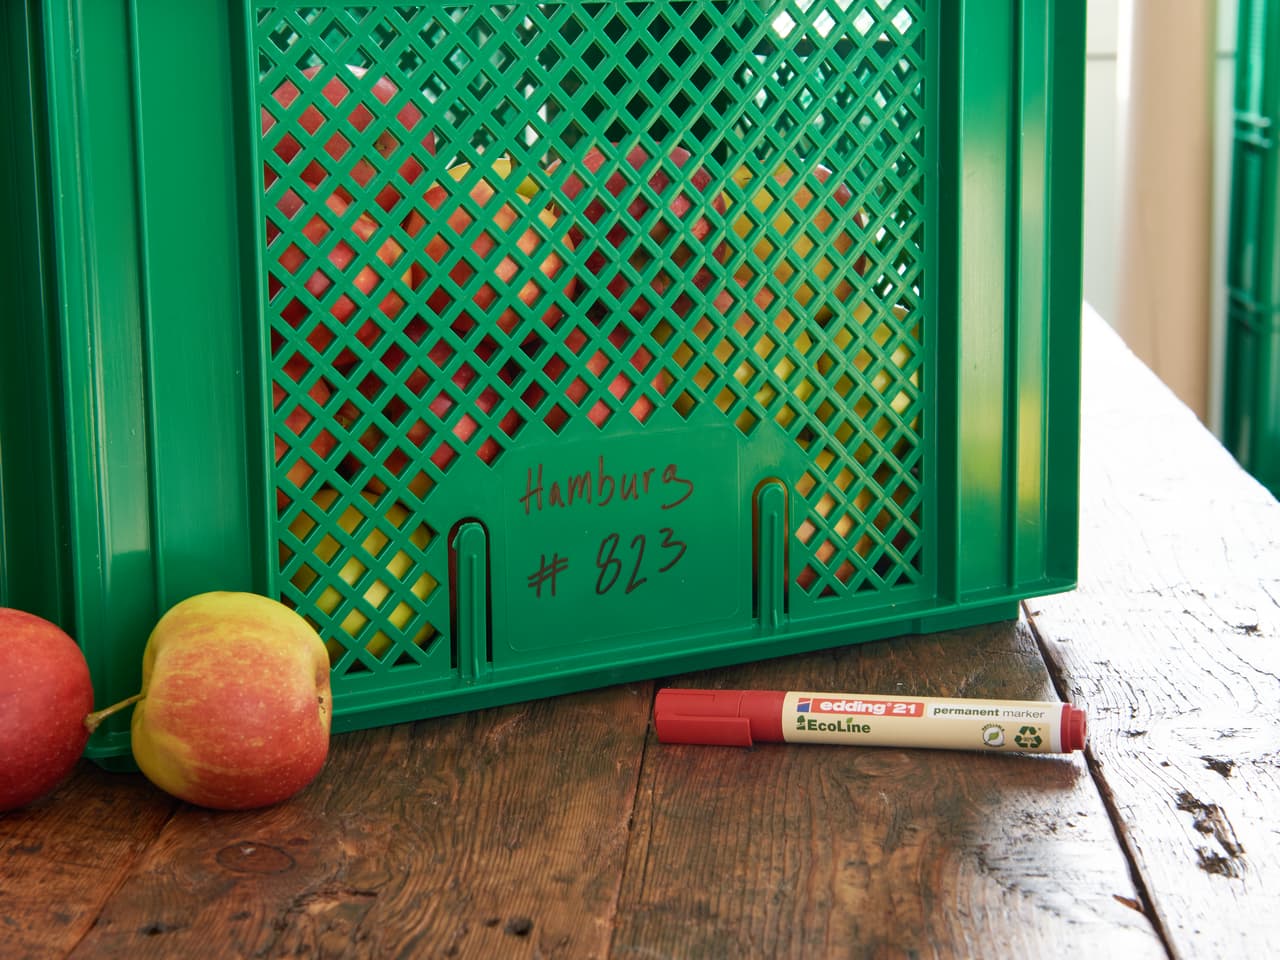 Grüne Plastikkiste mit der Aufschrift „hamburg #623“ daneben ein edding 21 EcoLine Permanentmarker und Äpfel auf einem Holztisch.